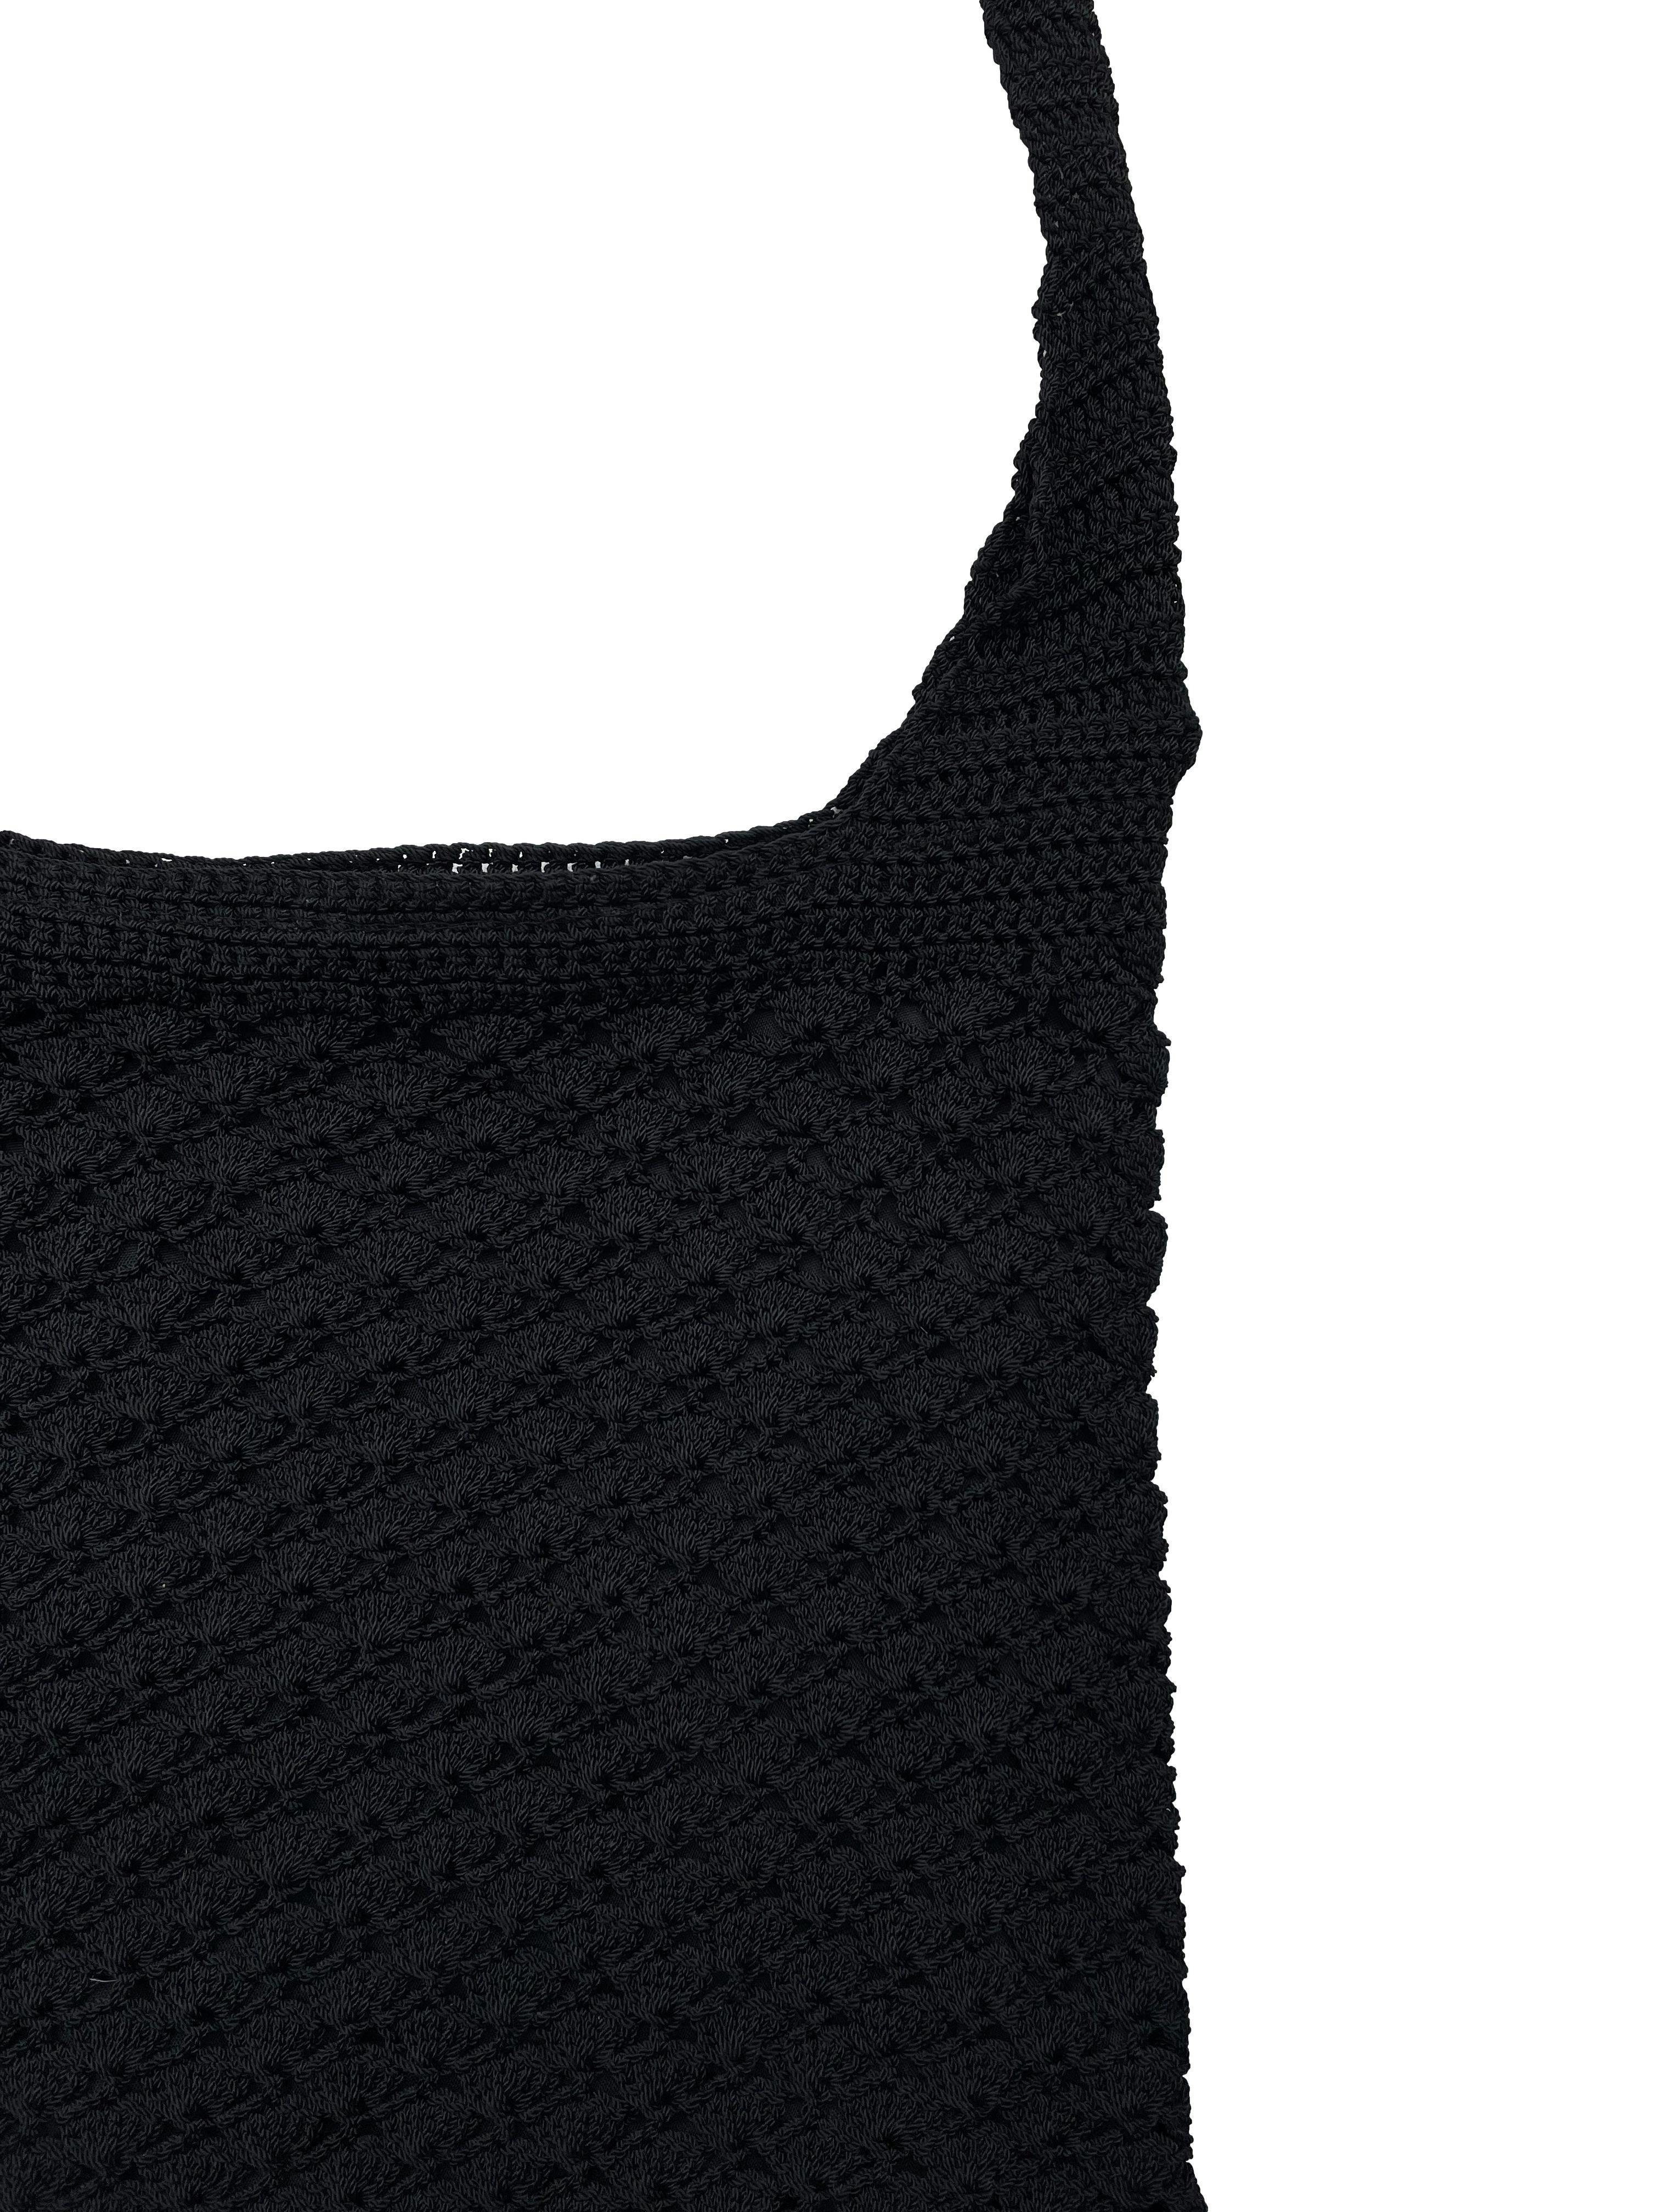 Cartera crossbody negra tejida a crochet con forro y cierre. Medidas 29x31cm